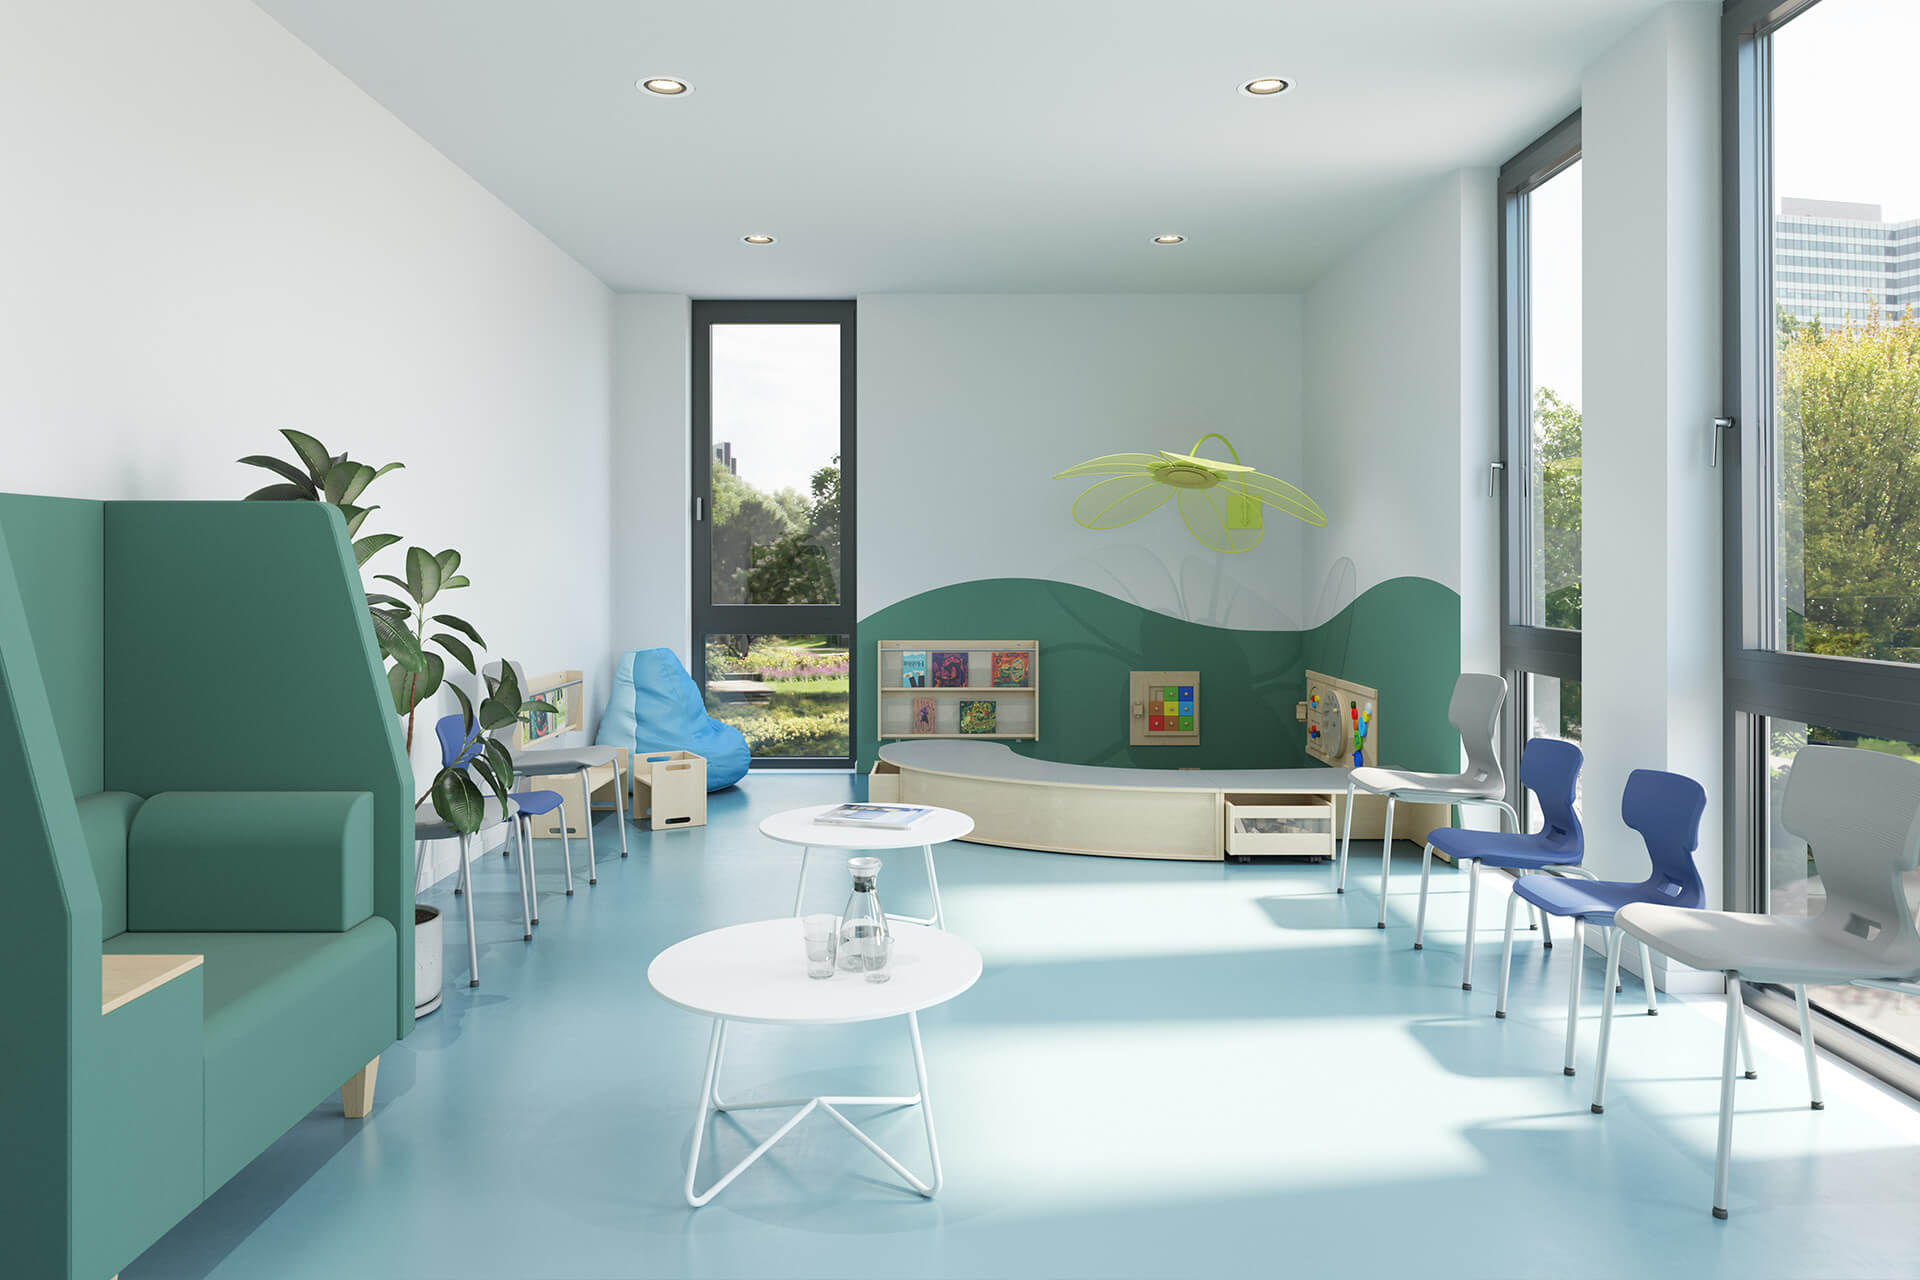 Business | 2 | Image | Healthcare | hellgestalteter Raum mit grüner Wellenwand und blauen Stühlen vor Fenster